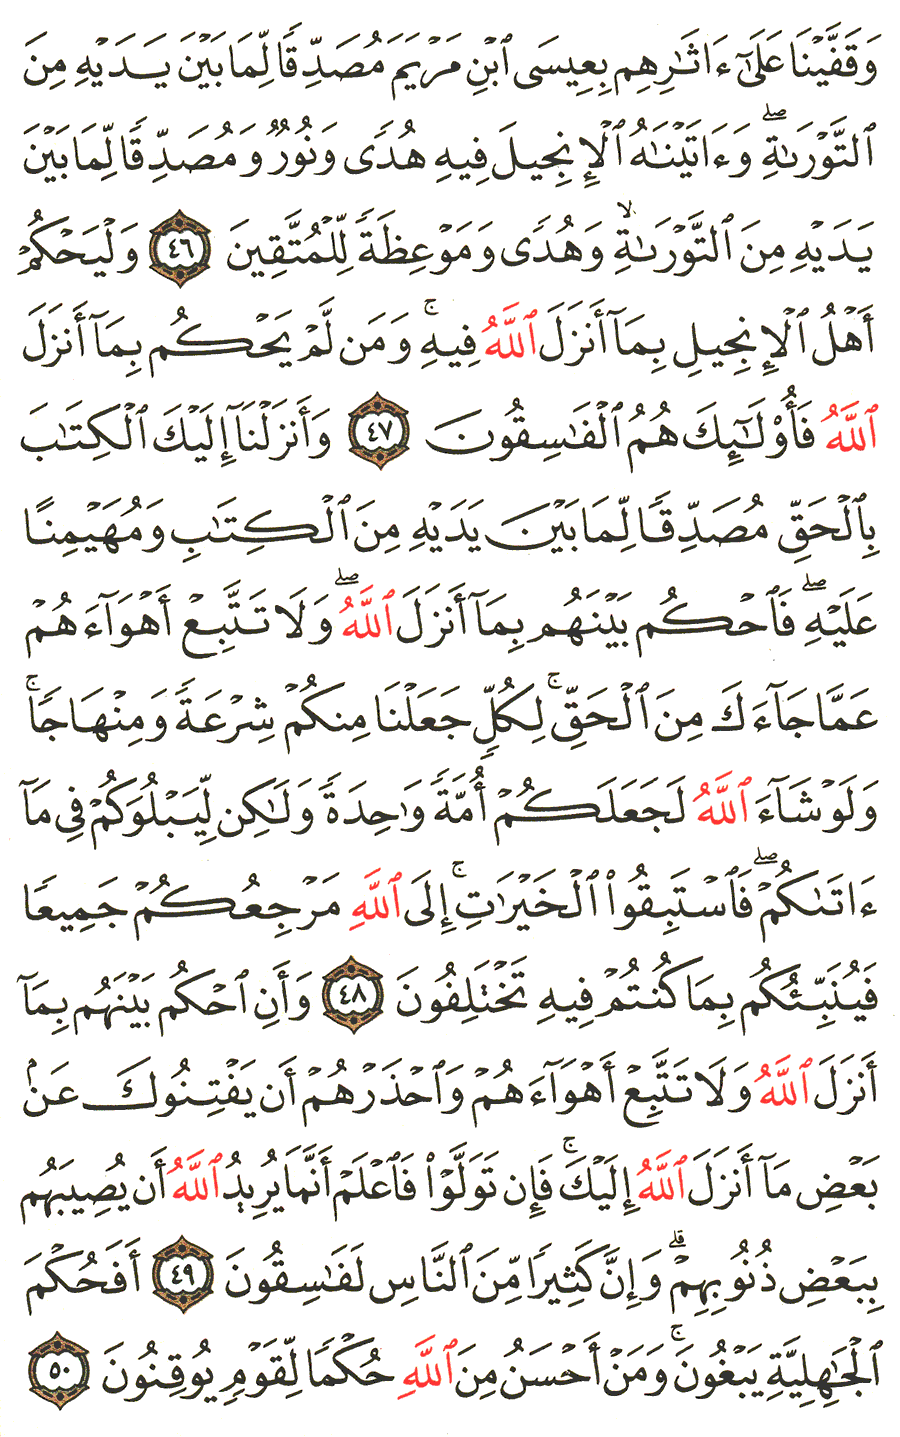 الصفحة رقم 116 من القرآن الكريم مكتوبة من المصحف